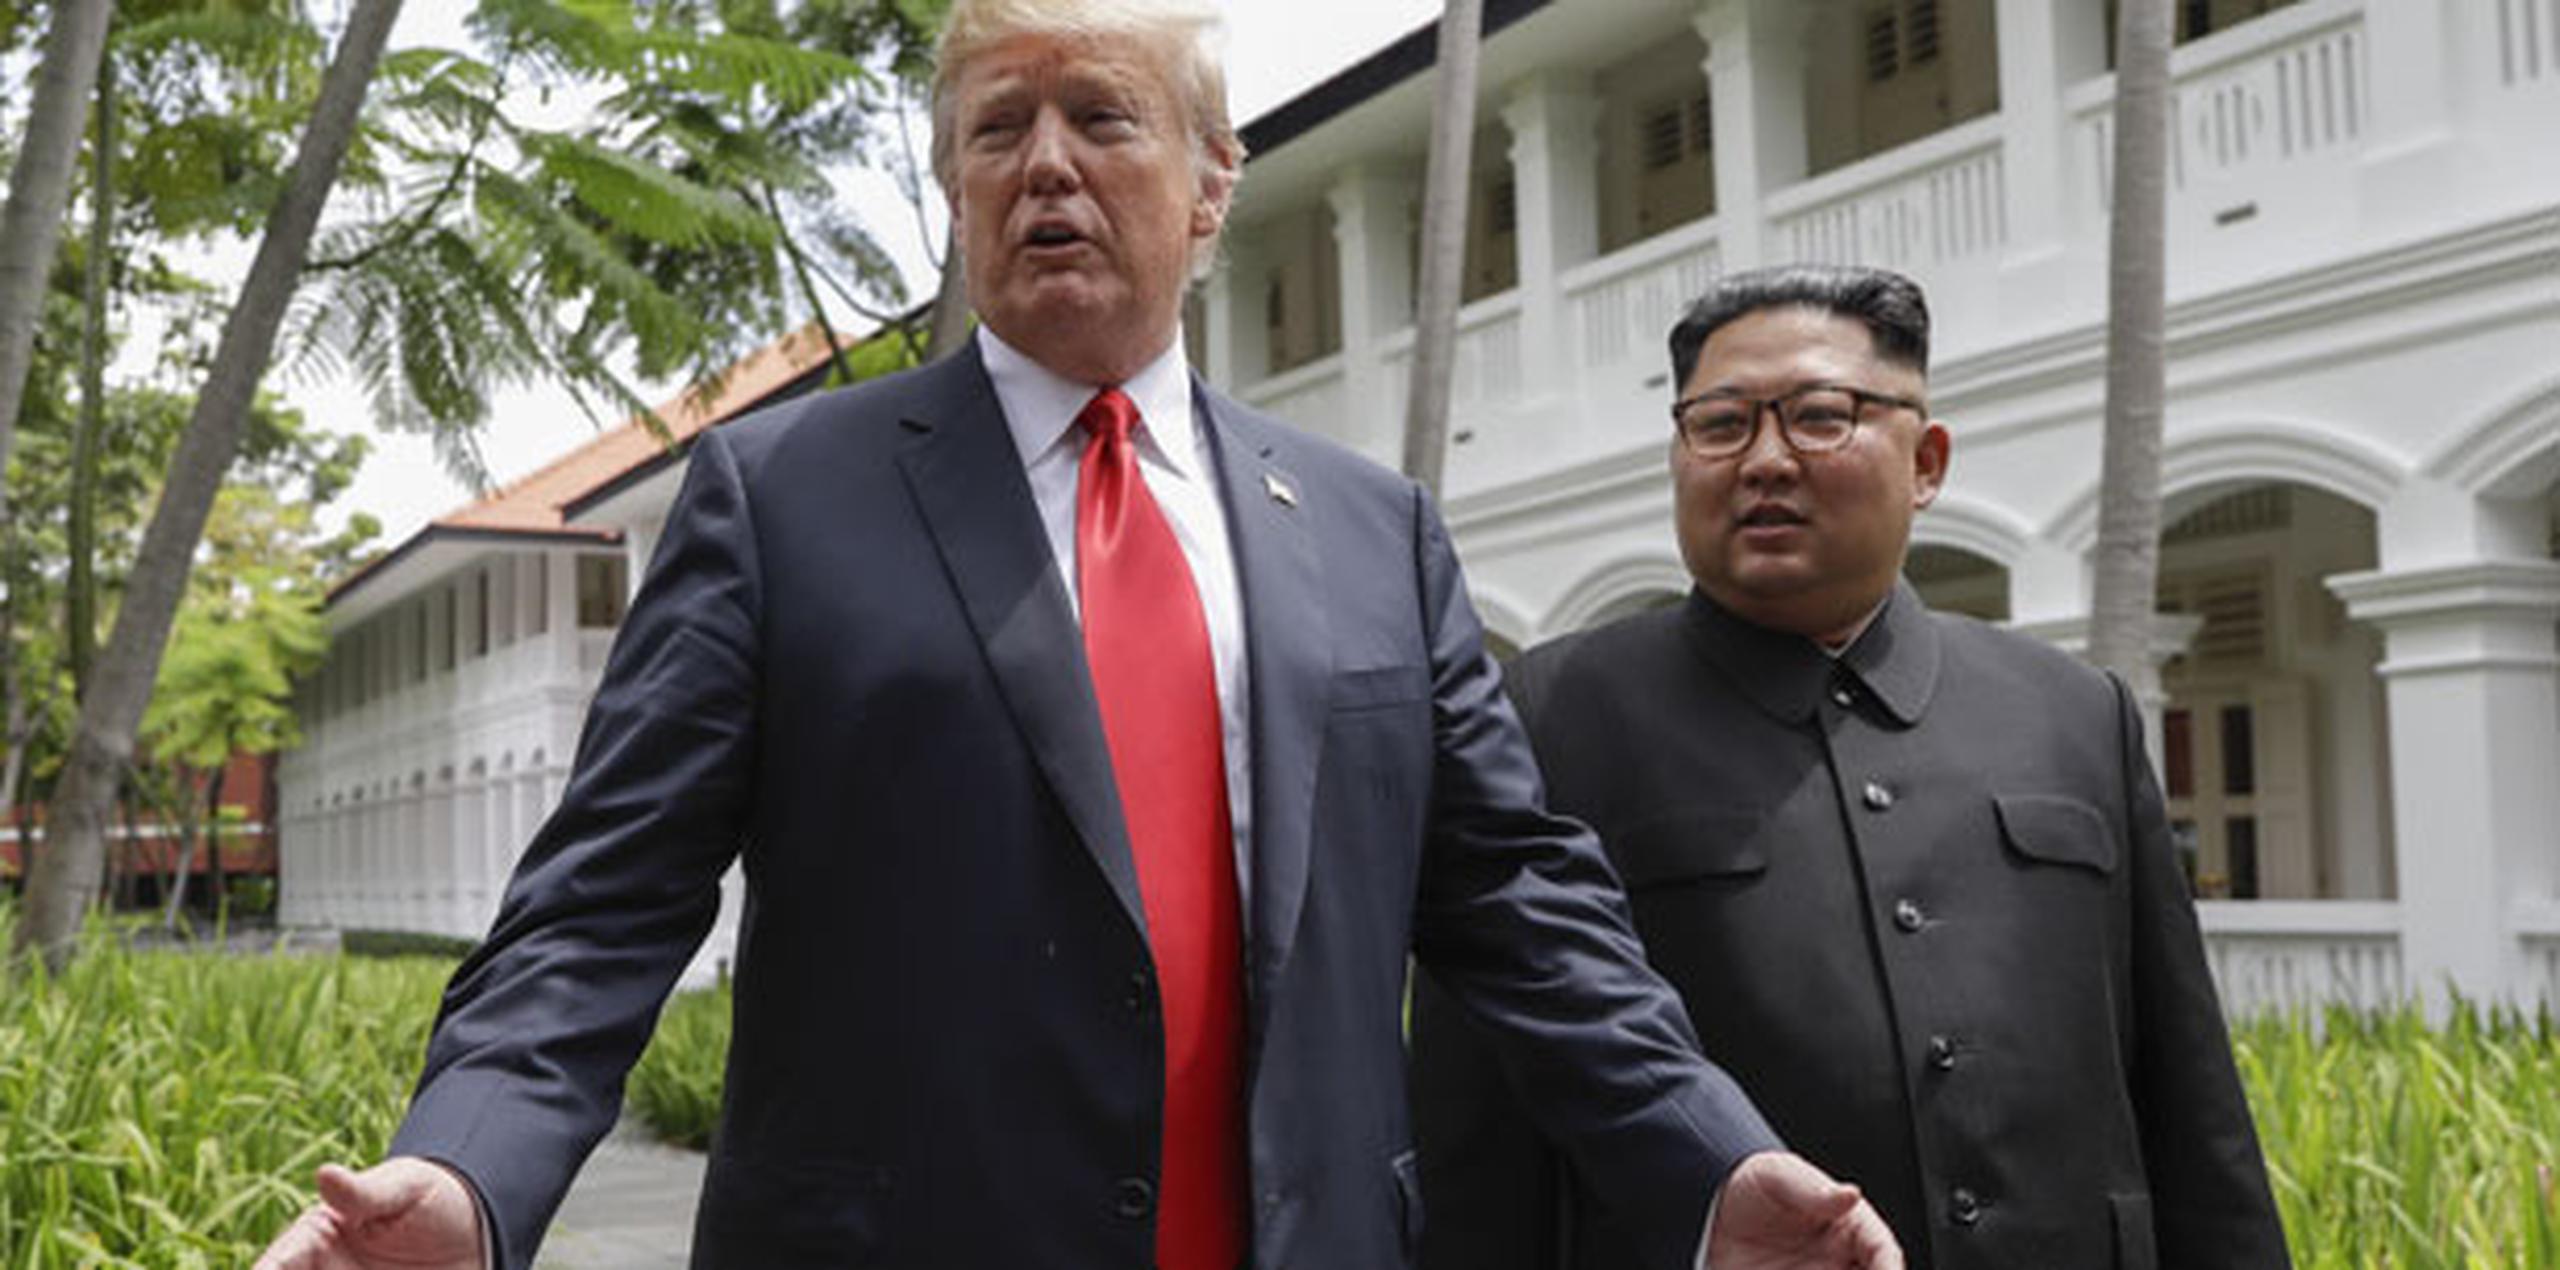 Trump enfrentaba cuestionamientos de que cedió demasiado sin recibir nada a cambio, que le confirió legitimidad al régimen totalitario norcoreano y que accedió con demasiada facilidad a la exigencia norcoreana de cesar las maniobras militares conjuntas con fuerzas surcoreanas.  (AP)